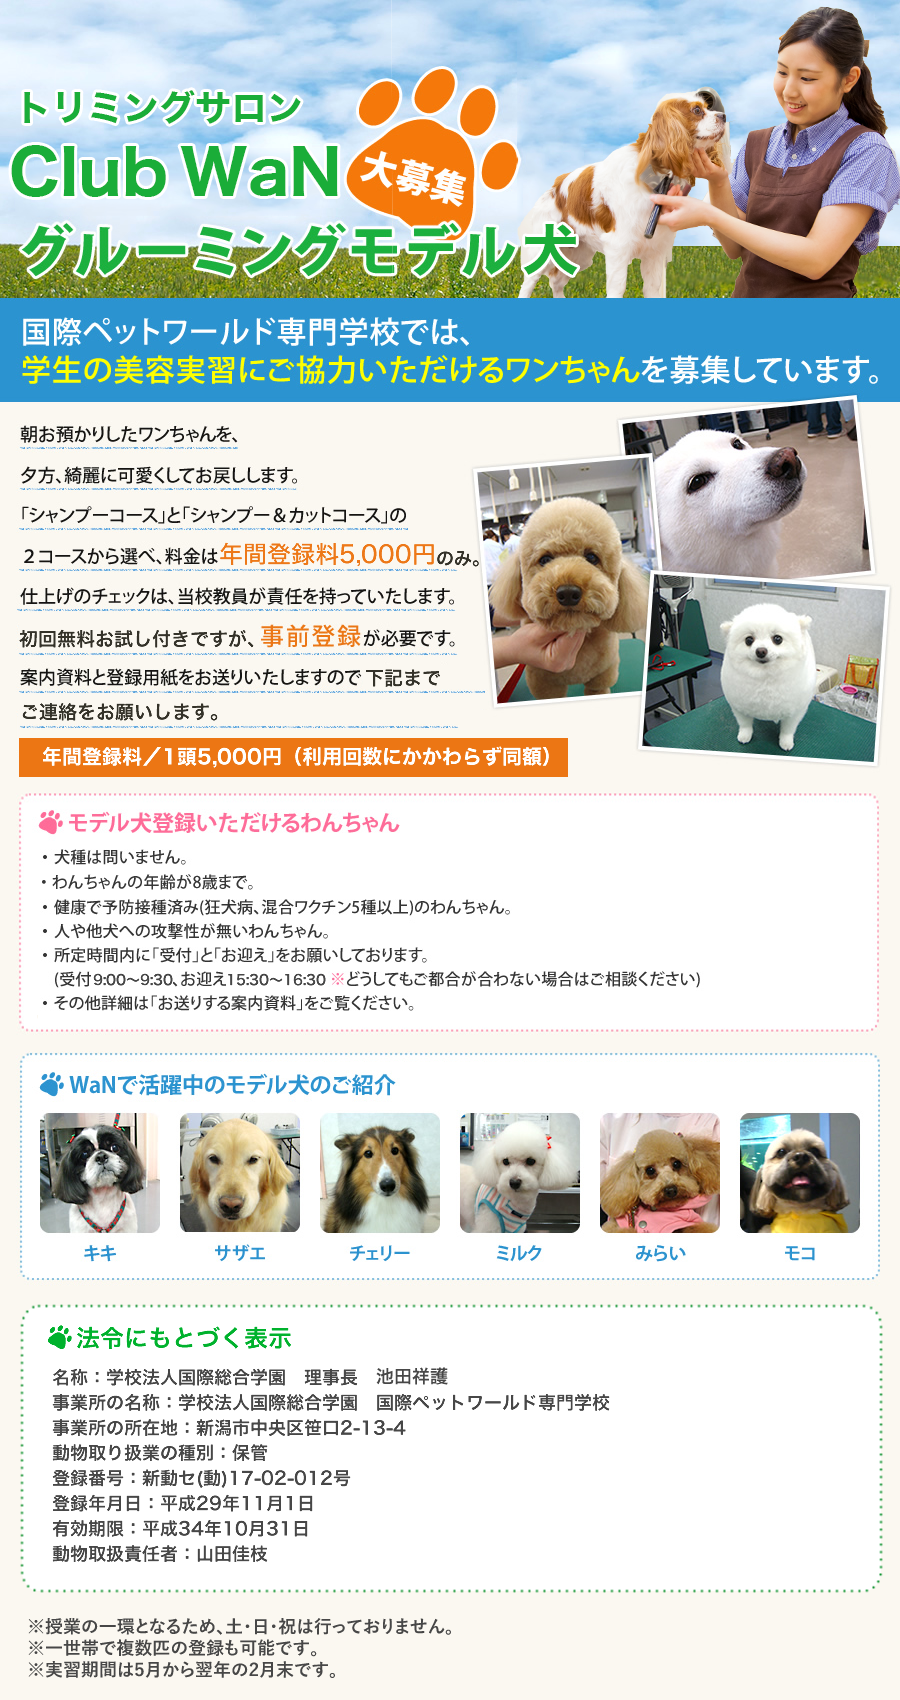 クラブwanグルーミングモデル犬 大募集 Wan 国際ペットワールド専門学校